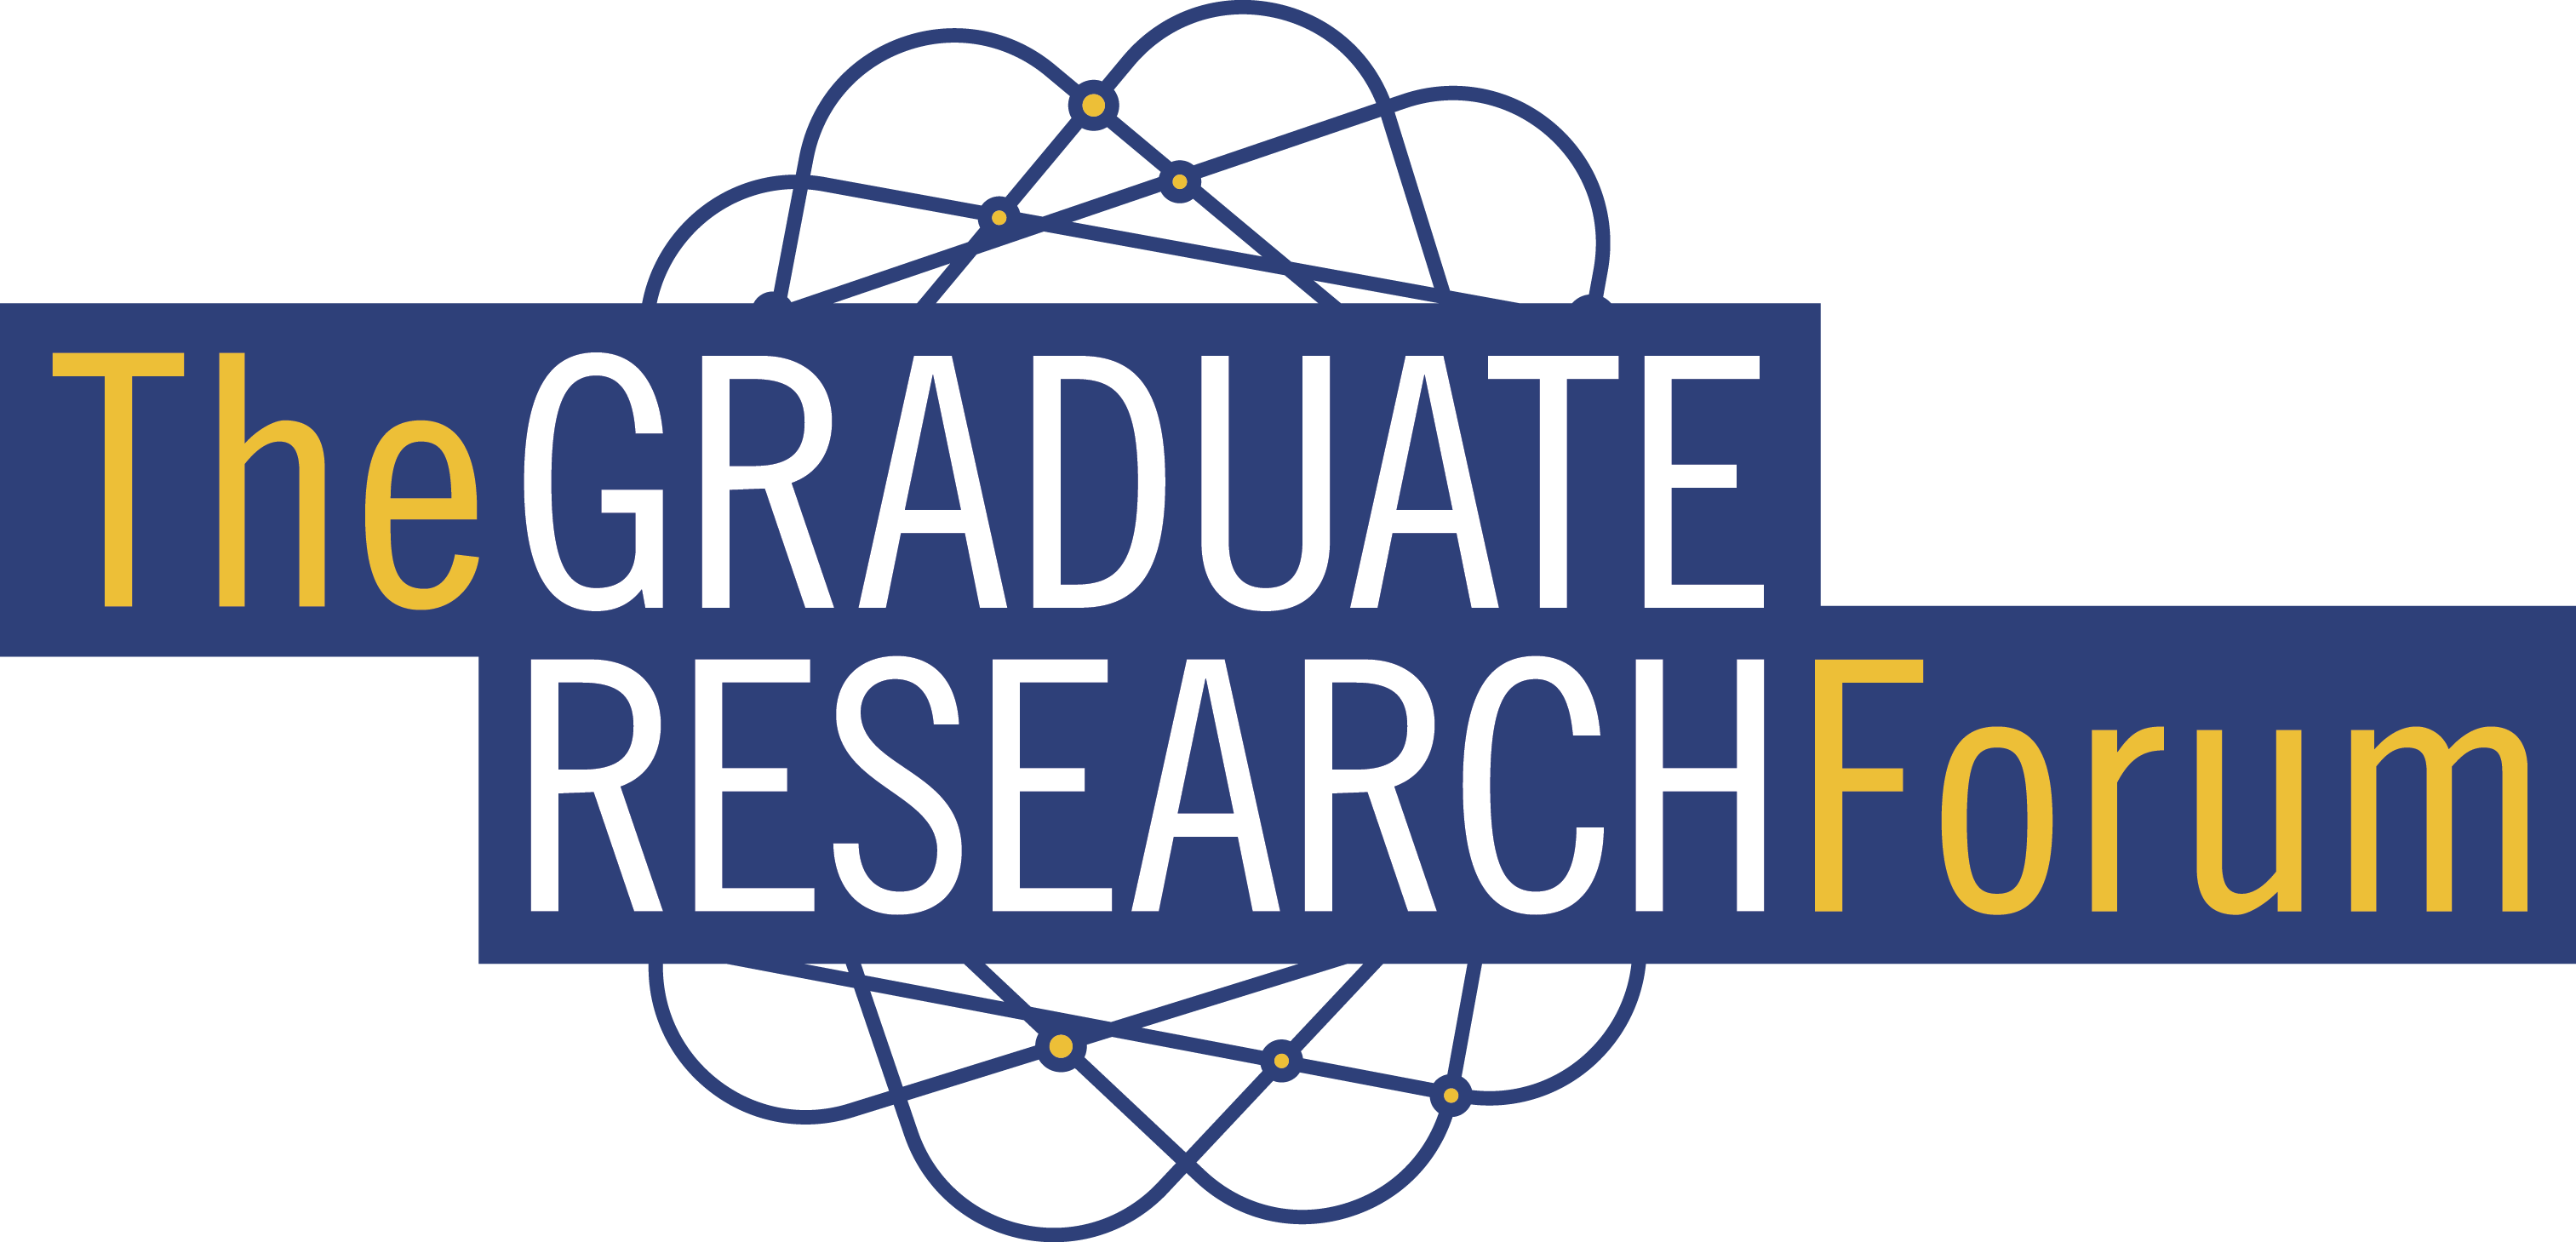 Graduate Research Forum Poster.jpg